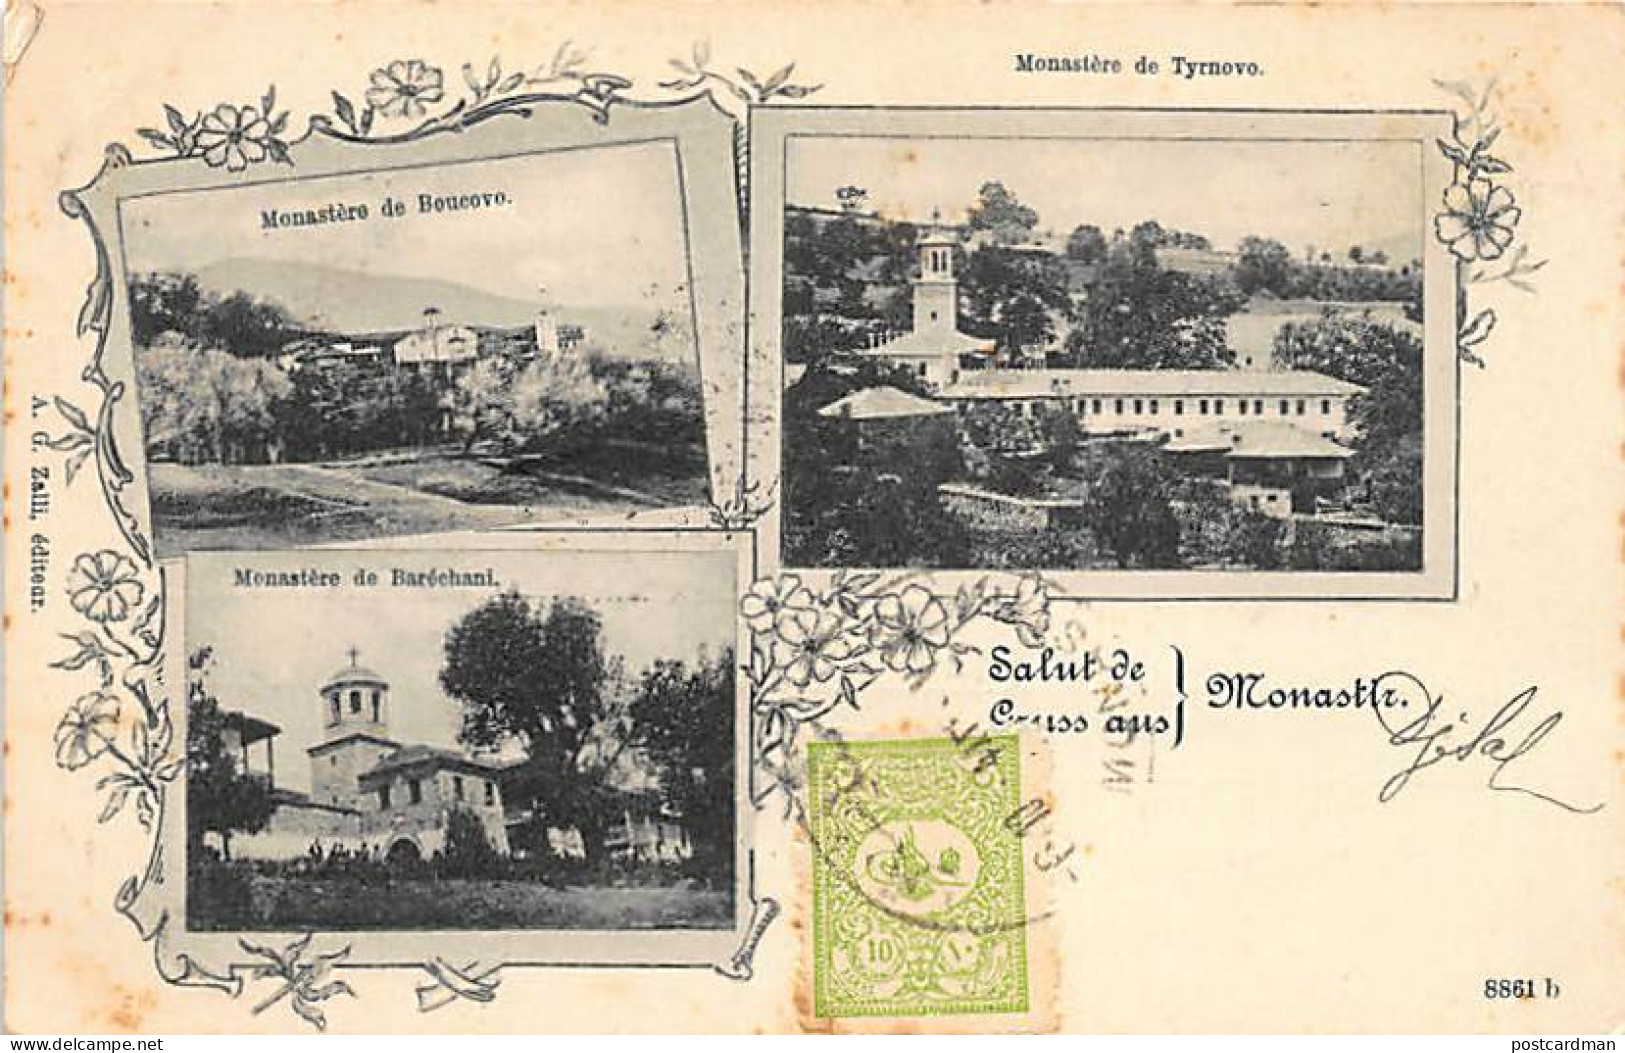 Macedonia - Gruss Aus Monastir - Bukovo Monastery - Baresani Monastery - Tirnovo Monastery - SEE STAMPS AND POSTMARKS -  - North Macedonia